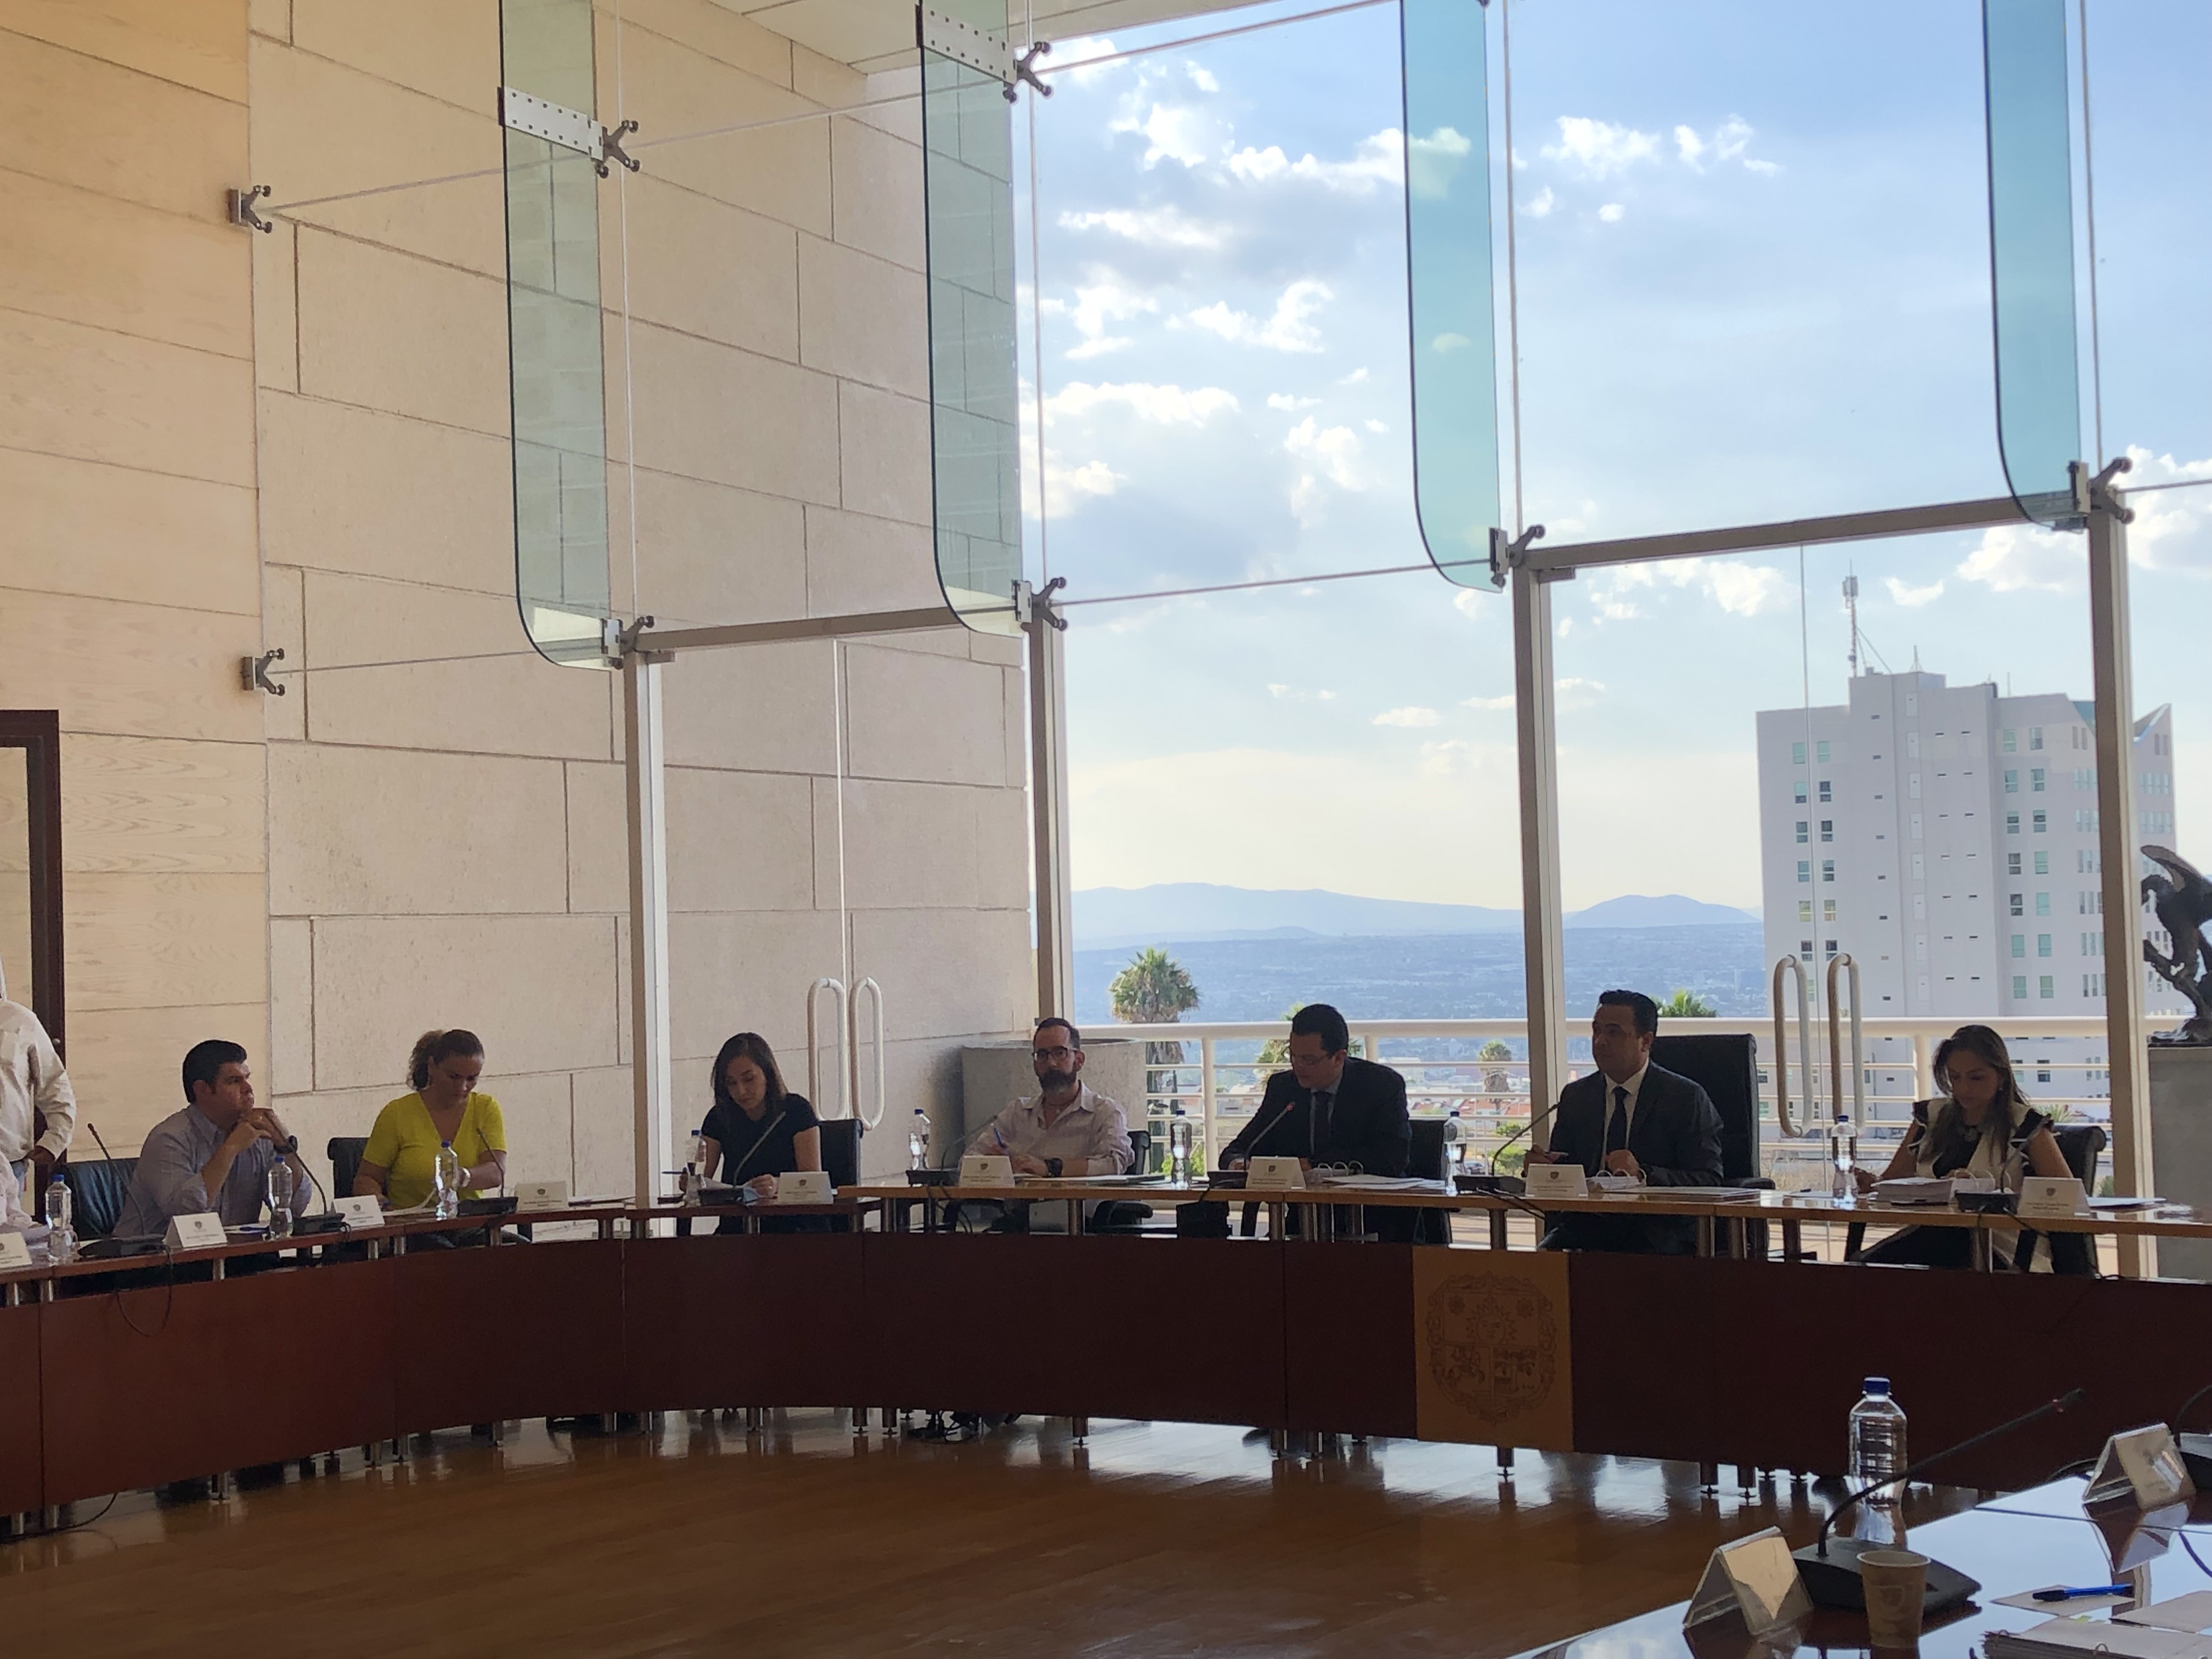  Se aprueba nuevo Reglamento de Justicia Cívica para el municipio de Querétaro